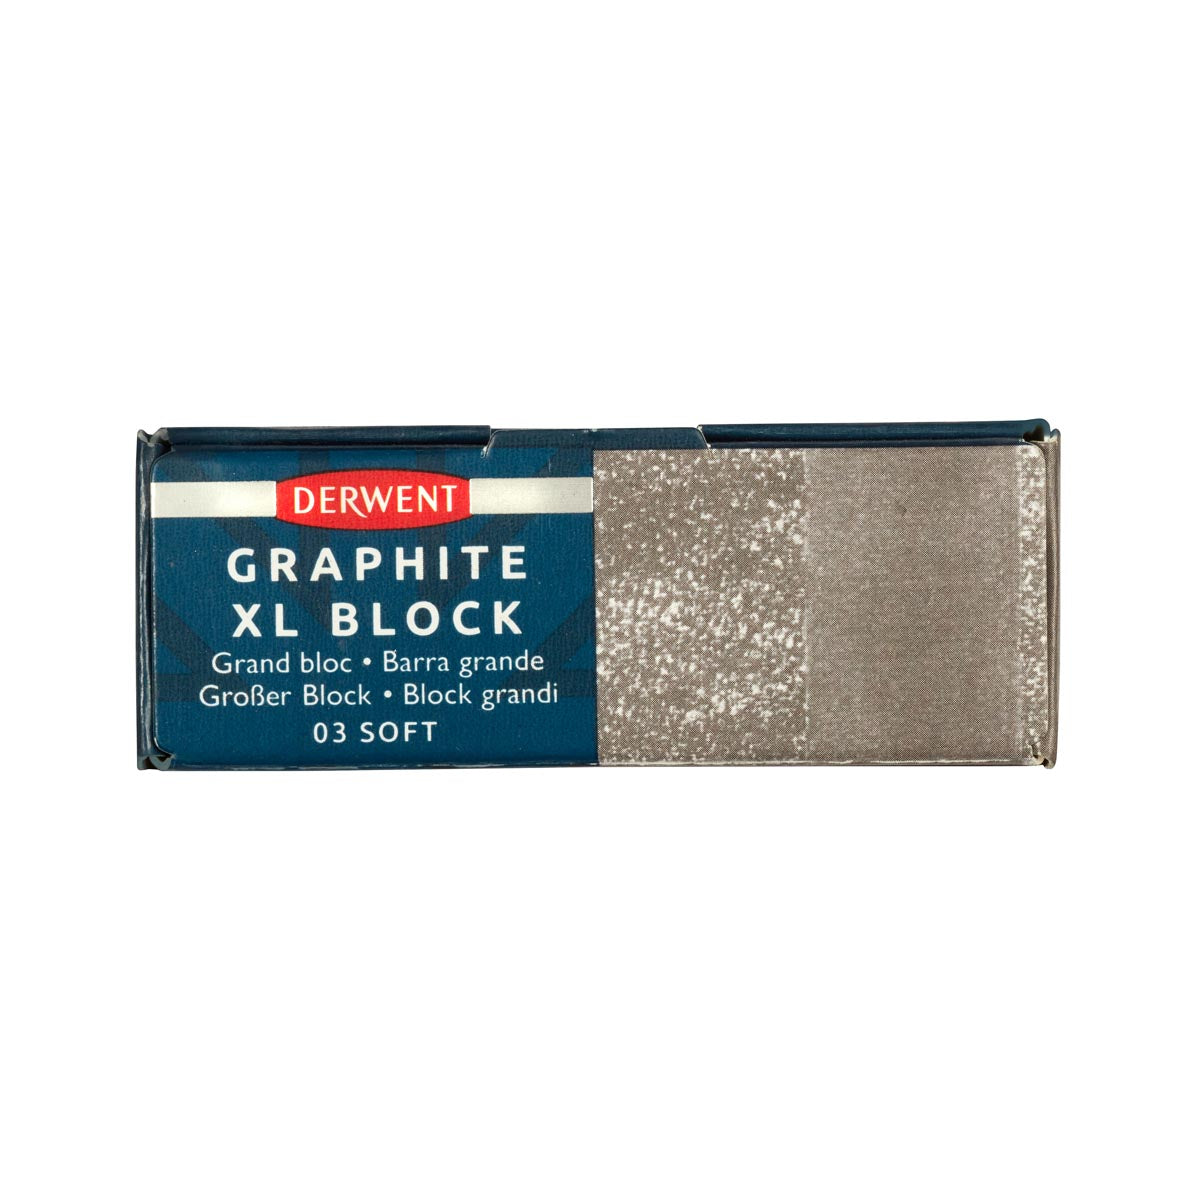 Derwent - Graphite XL Block - Soft